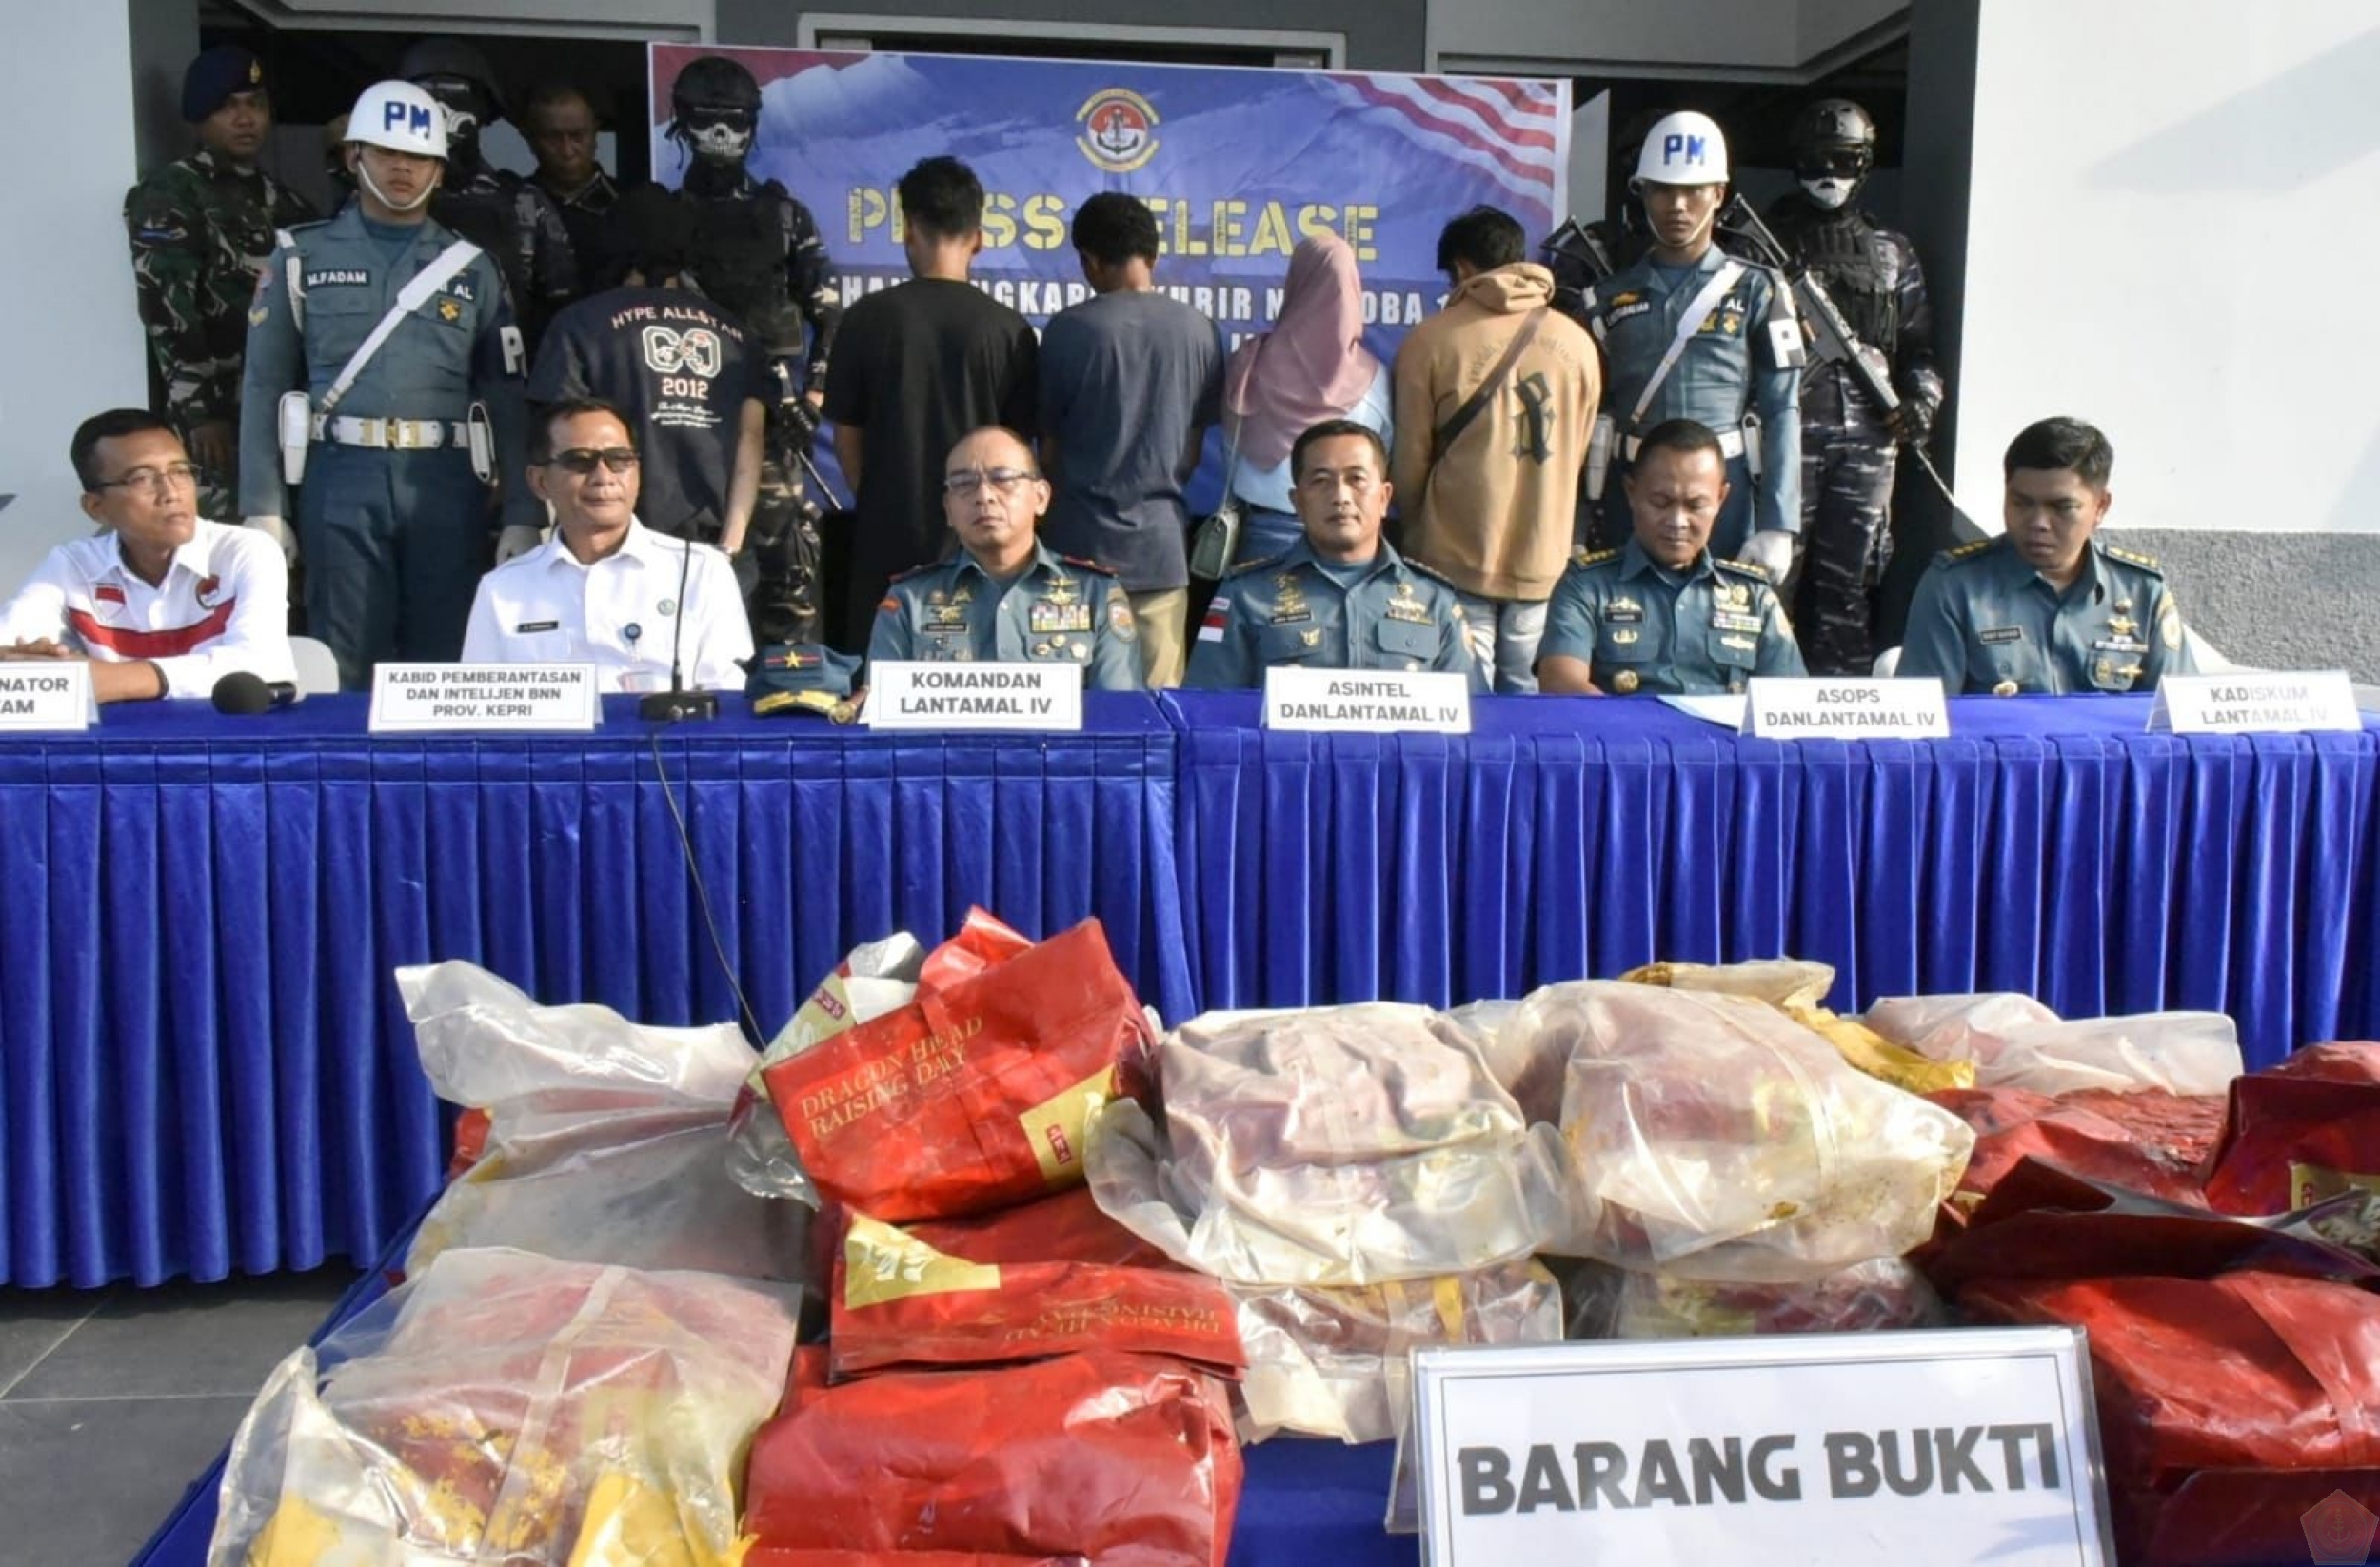 TNI AL Lantamal IV Batam Berhasil Menggagalkan Menyelundupkan Narkoba Jenis Sabu-Sabu Seberat 19 Kilogram Dengan Nilai Sekitar 19 Milyar Rupiah